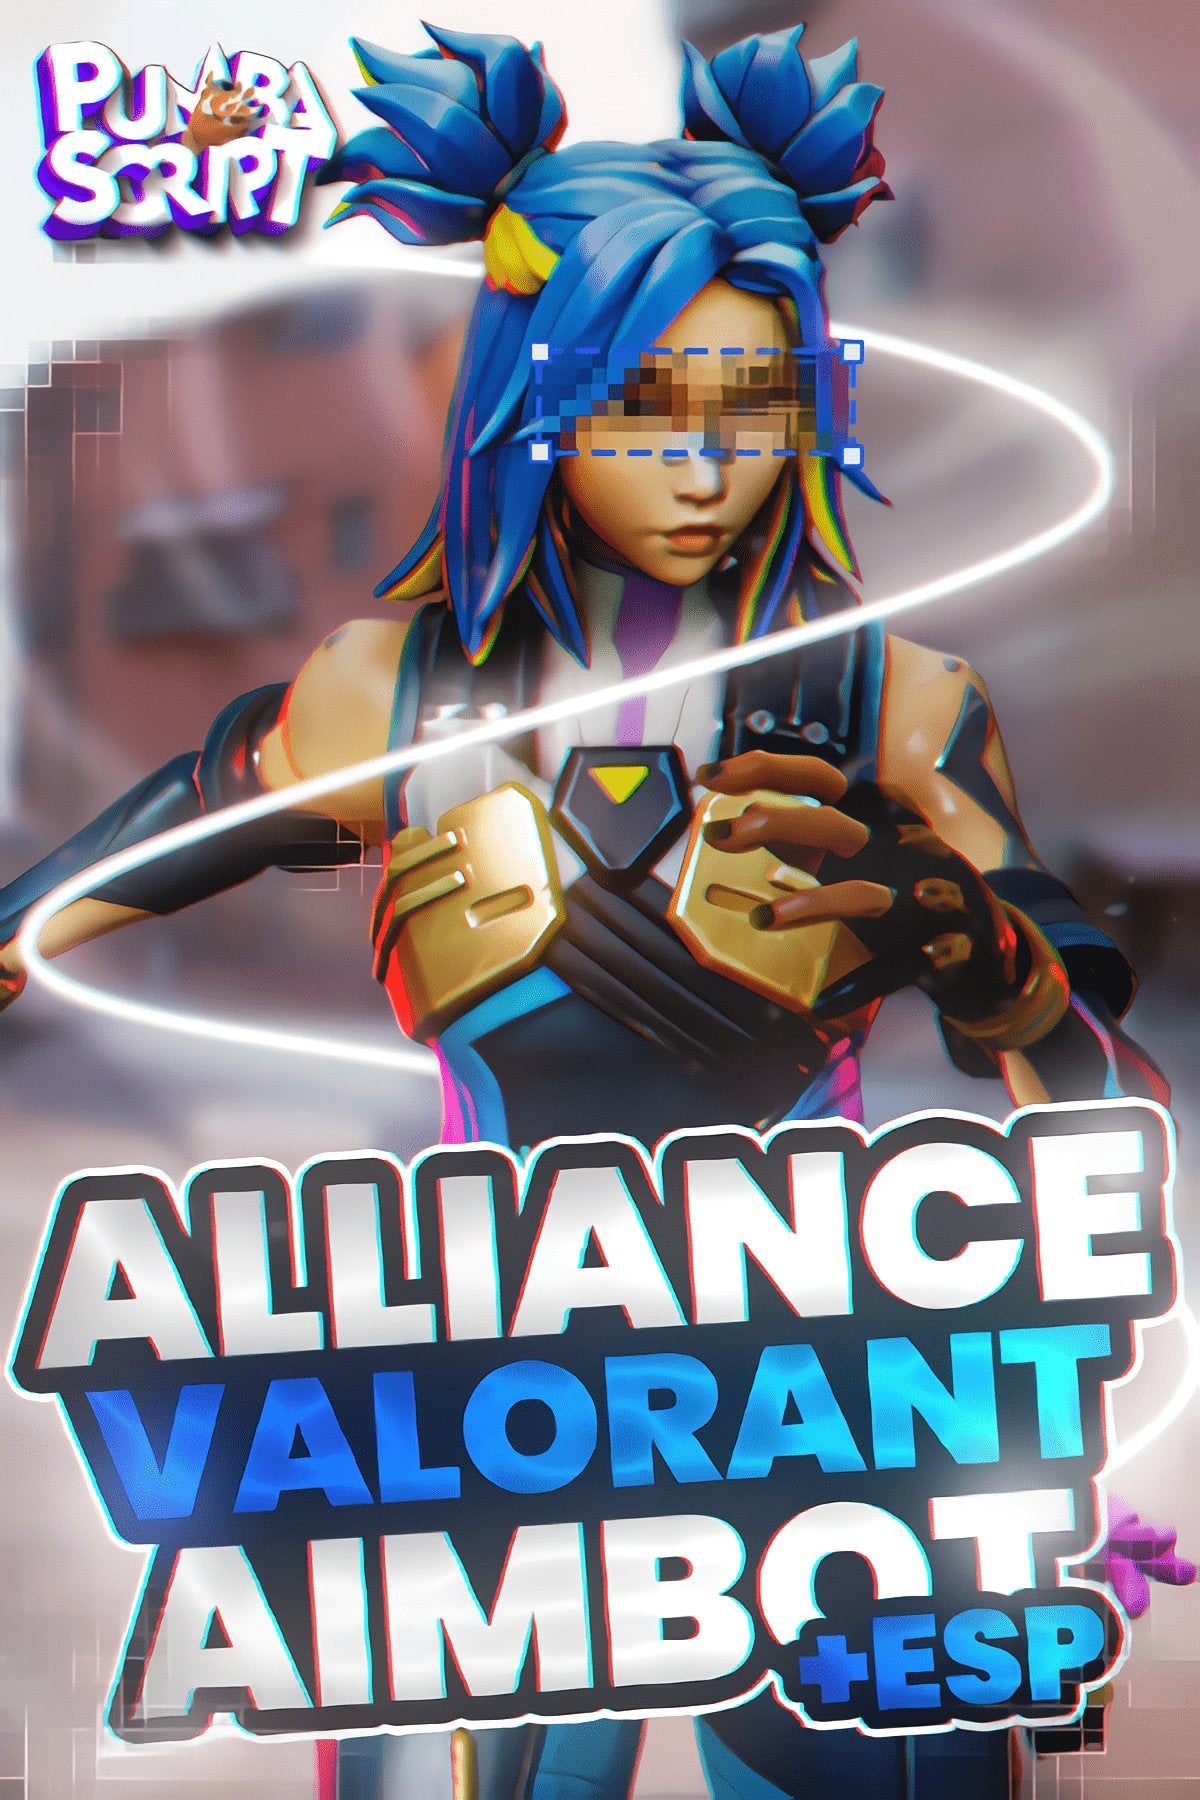 ALLIANCE VALORANT AIMBOT + ESP